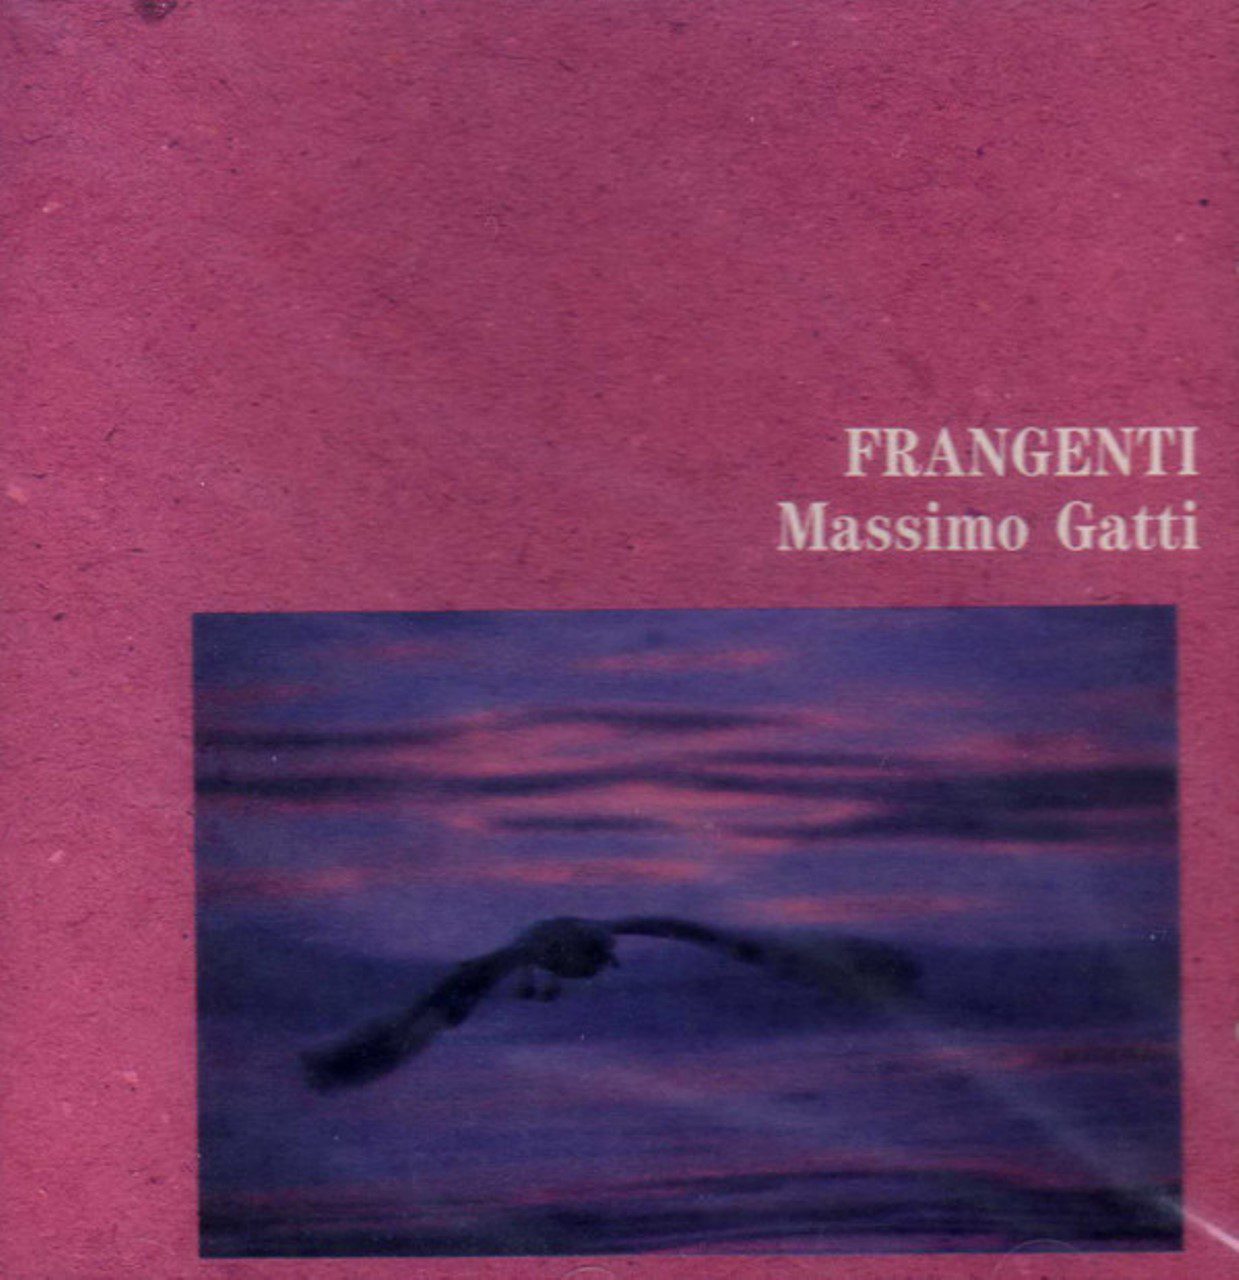 Massimo Gatti – Frangenti cover album